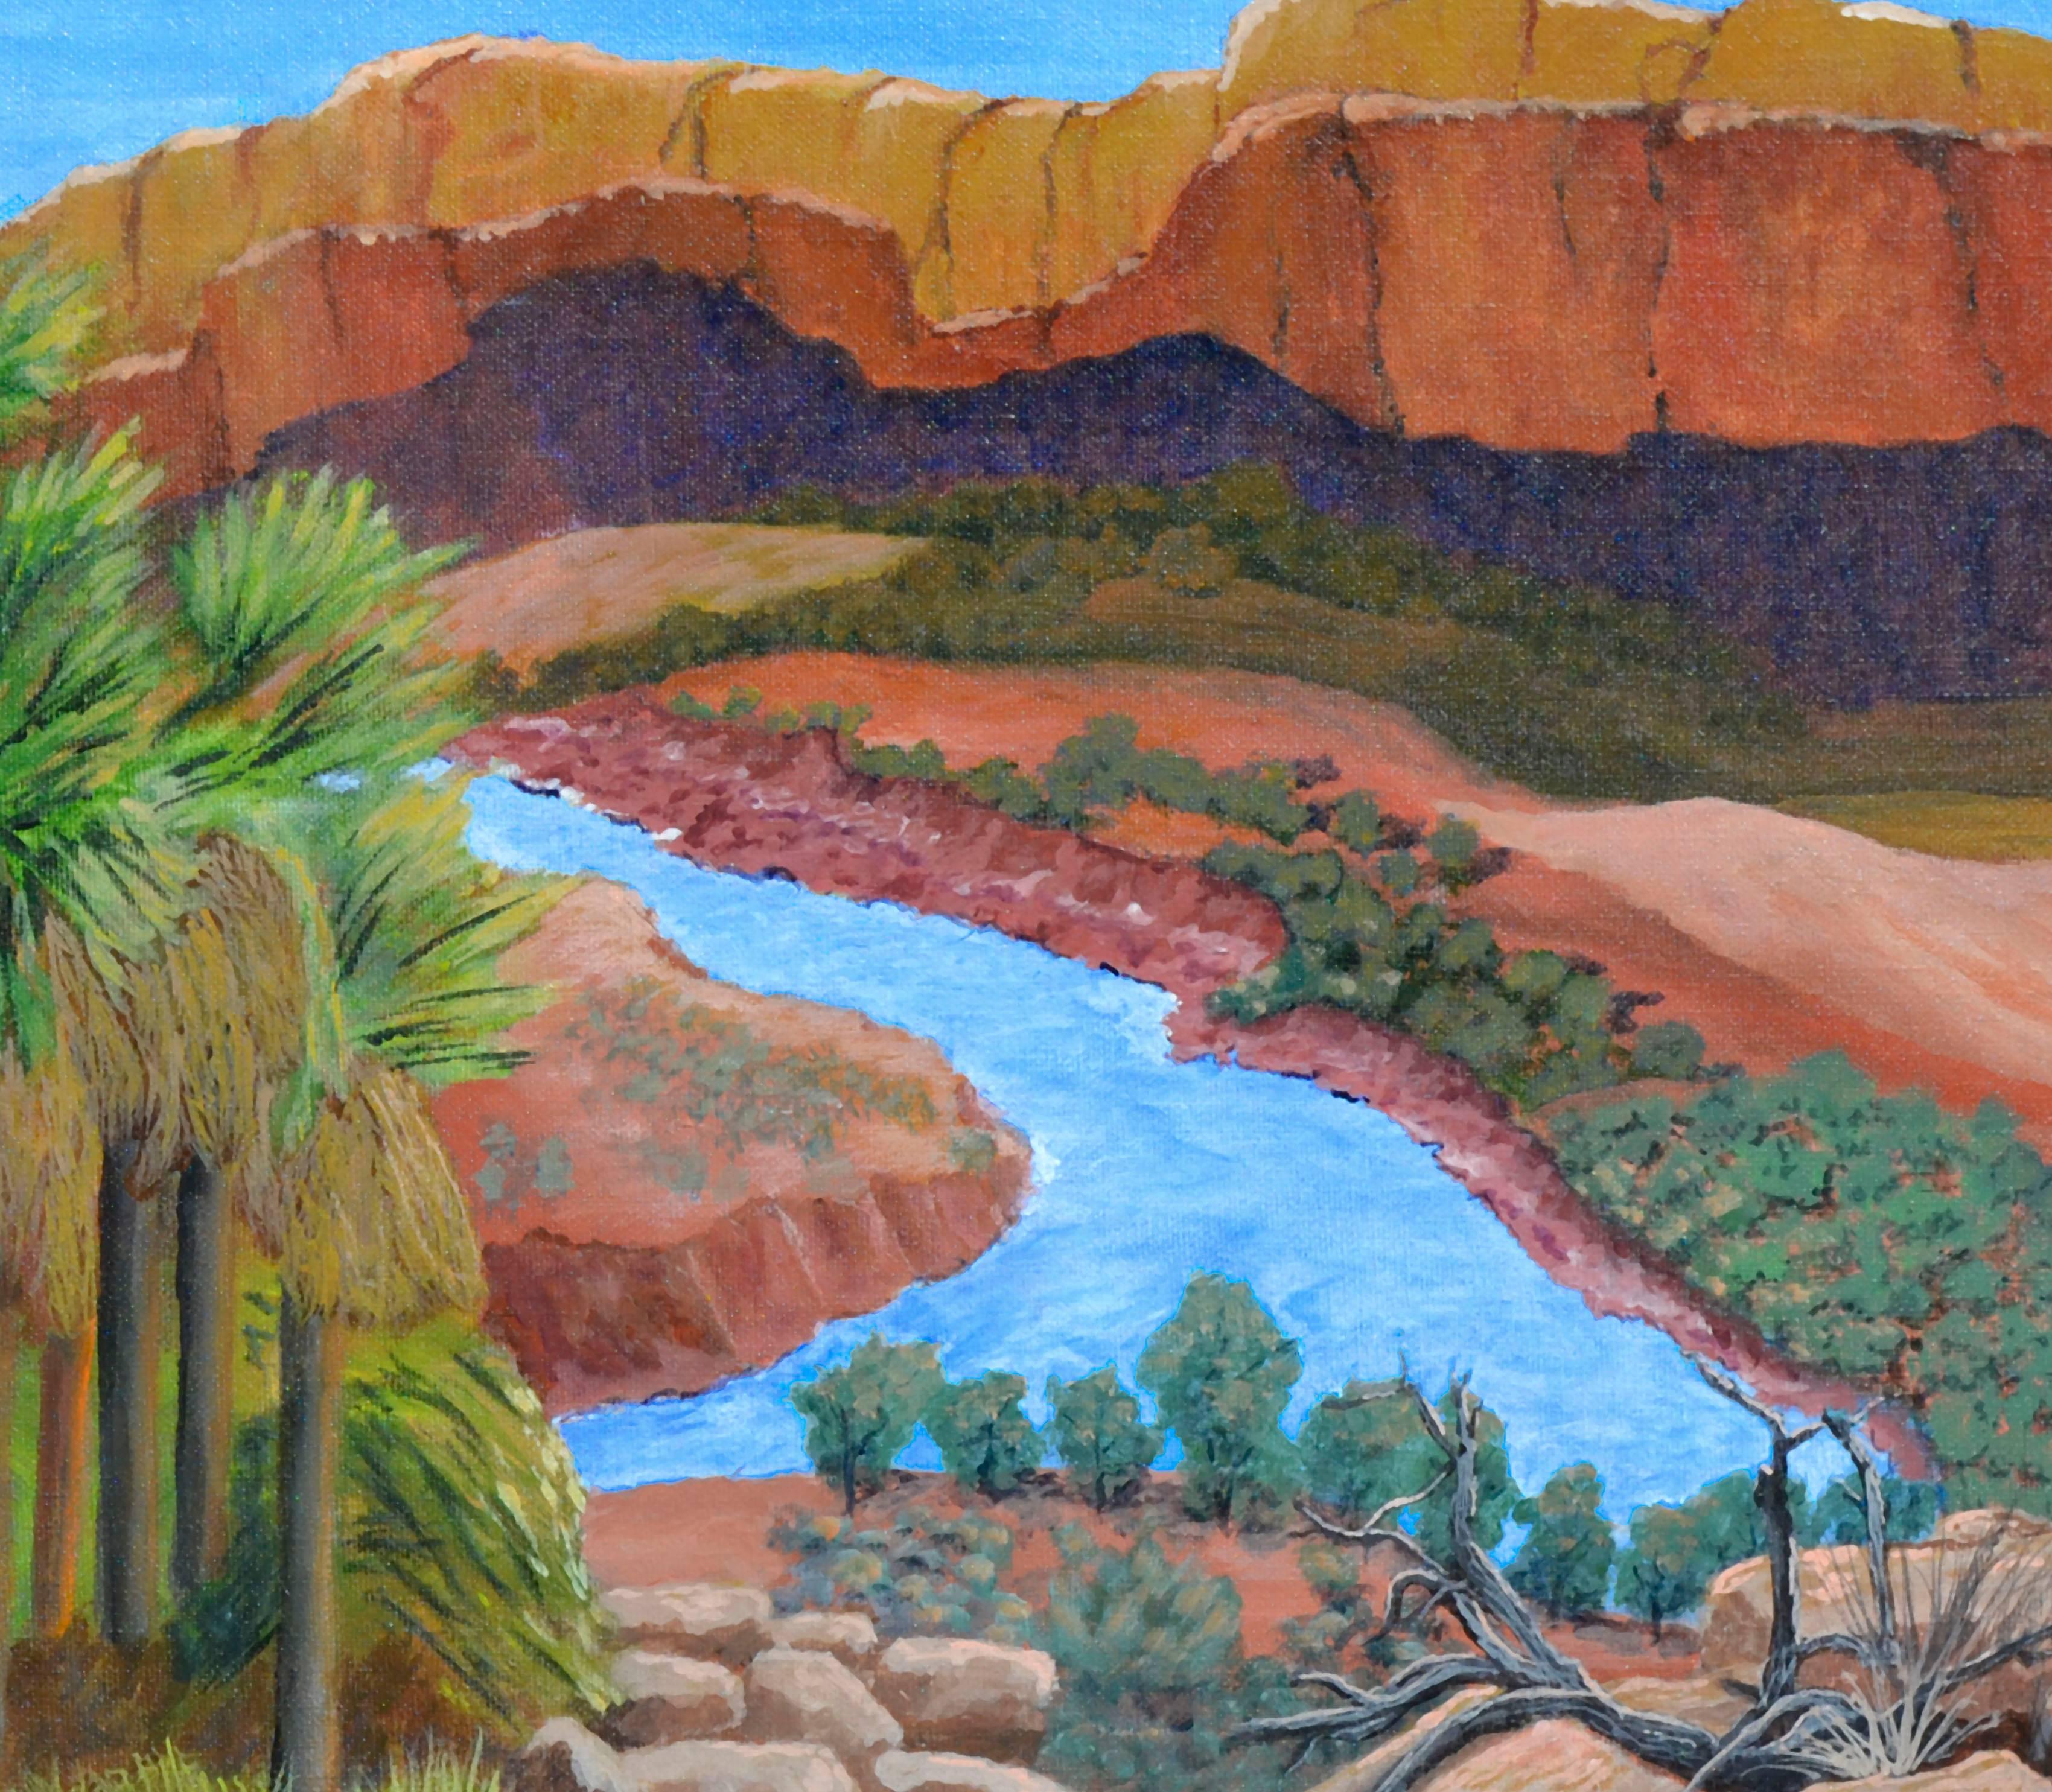 Canyon et rivière - Paysage du désert  - Impressionnisme américain Painting par Clementine Cote